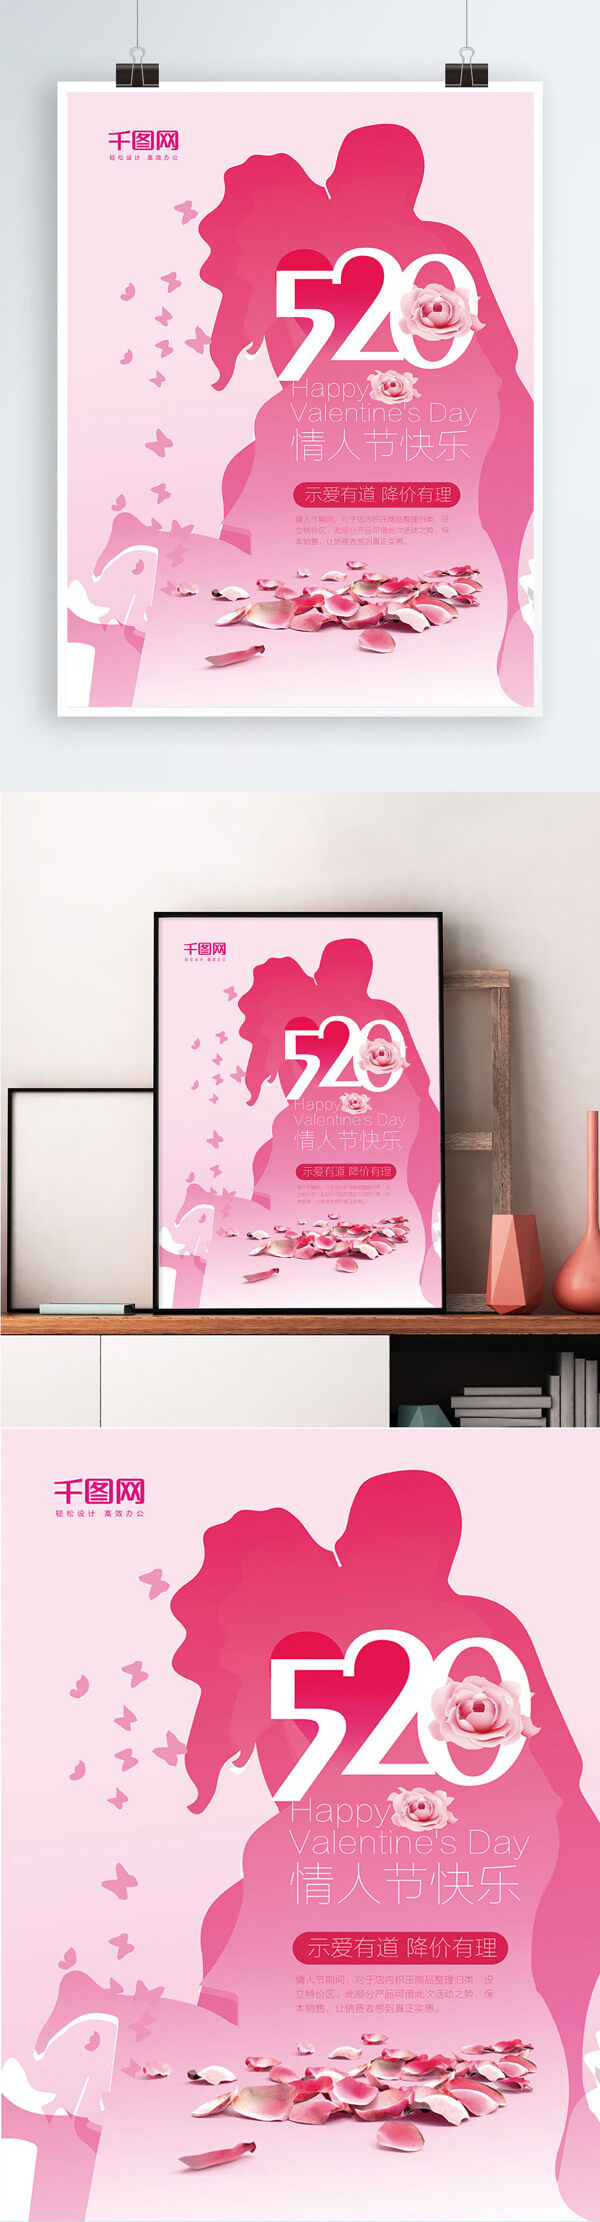 粉色浪漫520情人节快乐促销海报设计模板